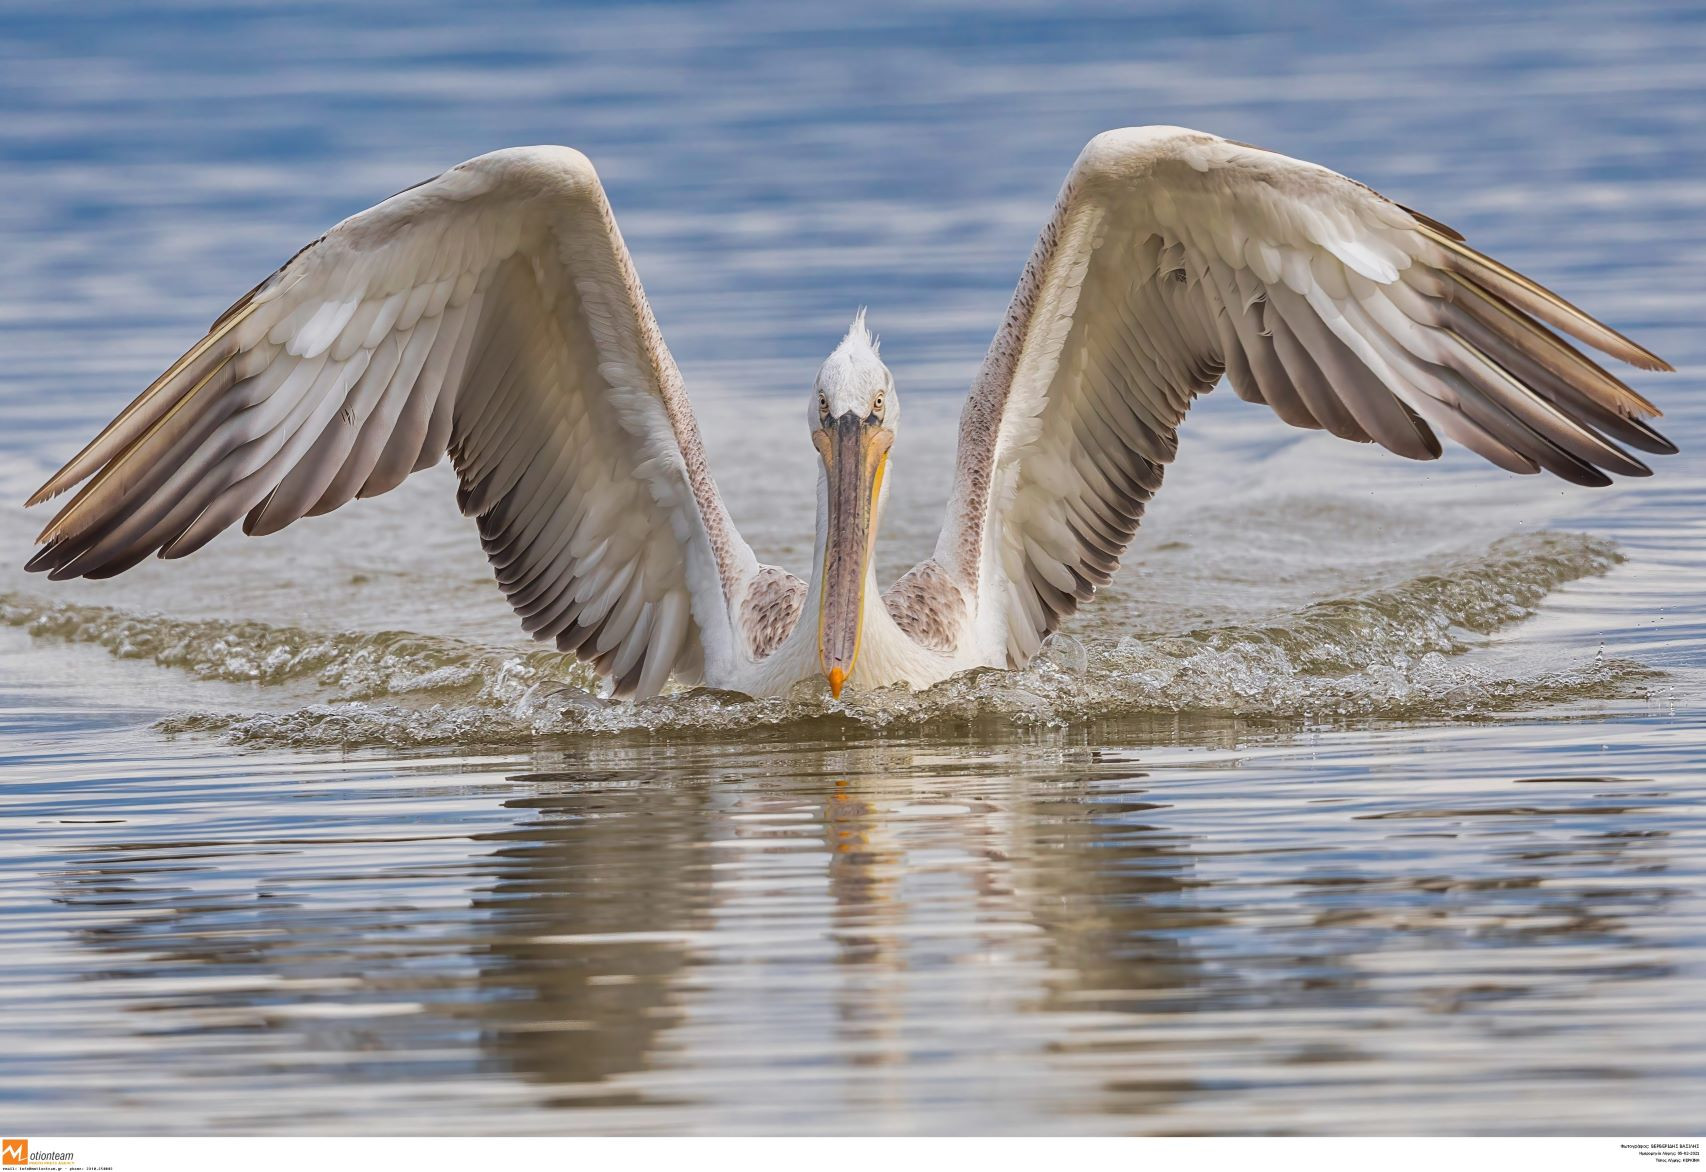 Λίμνη Κερκίνη: Ένας τόπος πολλών σπάνιων πουλιών και προστατευμένων ειδών